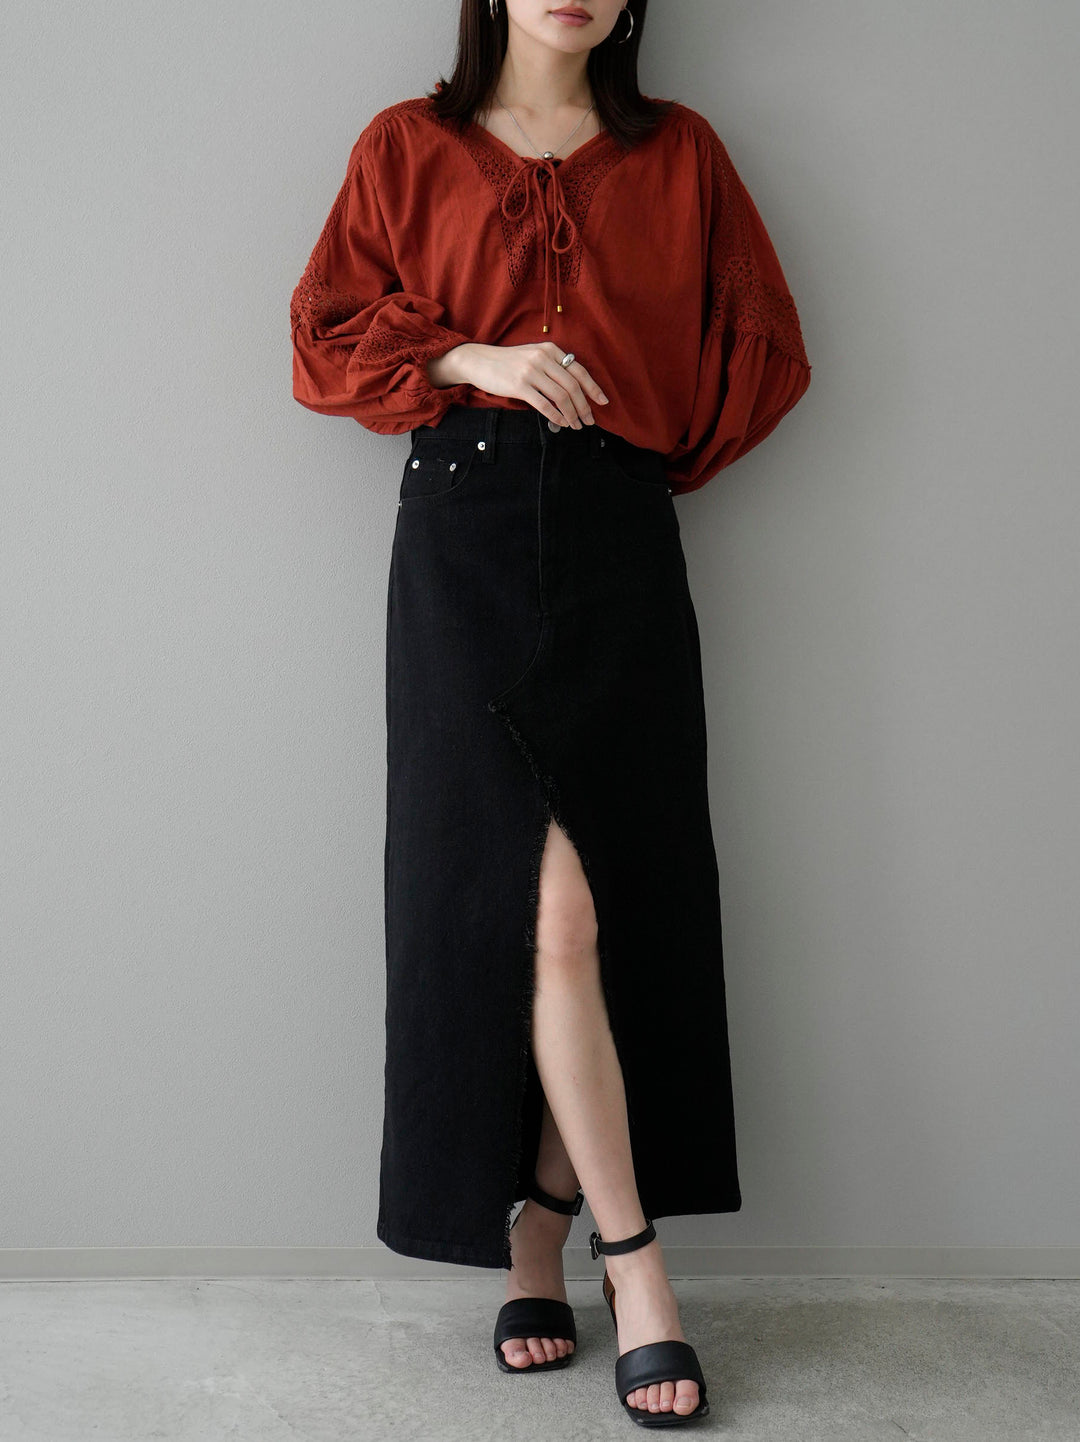 [SET] Cotton lace blouse + front slit denim long skirt (2set)